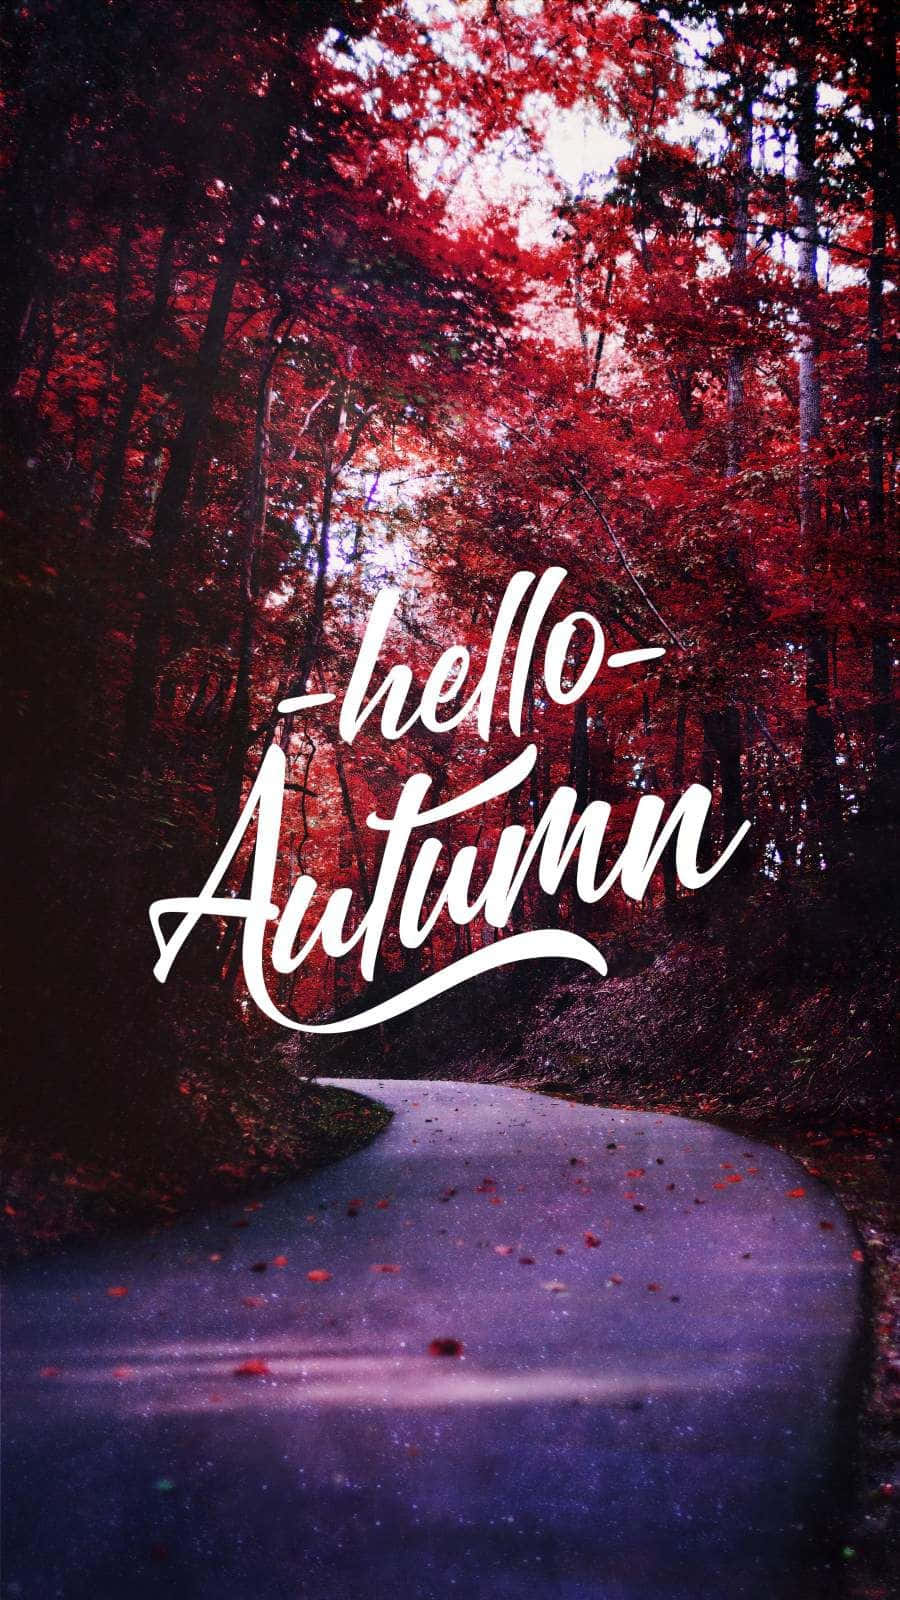 Halloherbst! Begrüße Den Herbst Mit Dieser Schönen Außenszene Wallpaper